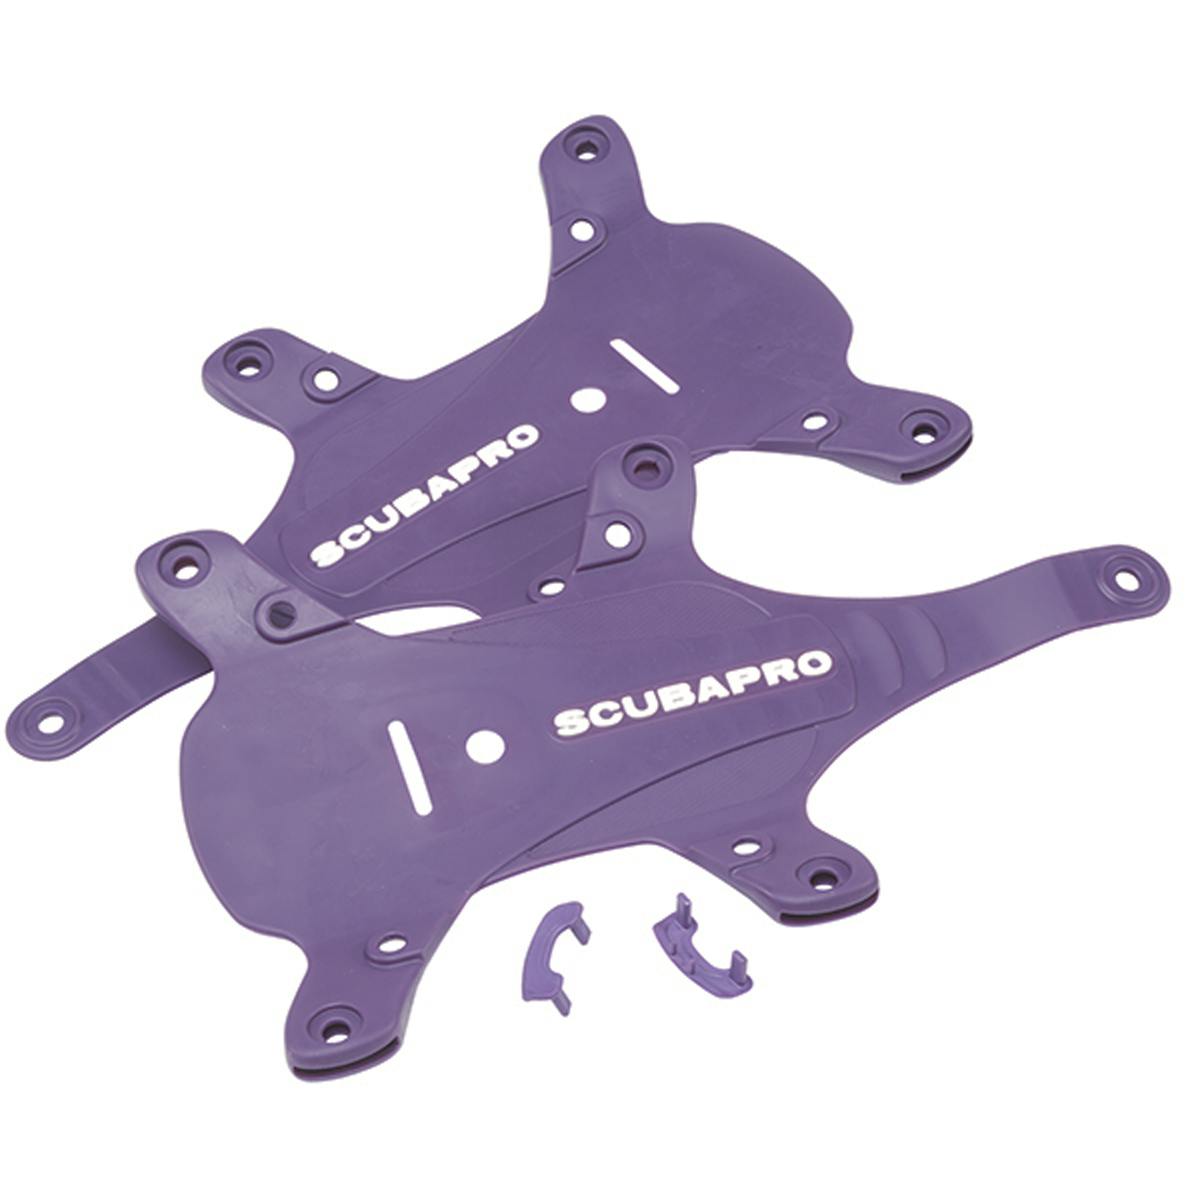 ScubaPro Hydros Pro BCD Color Kit - Purple